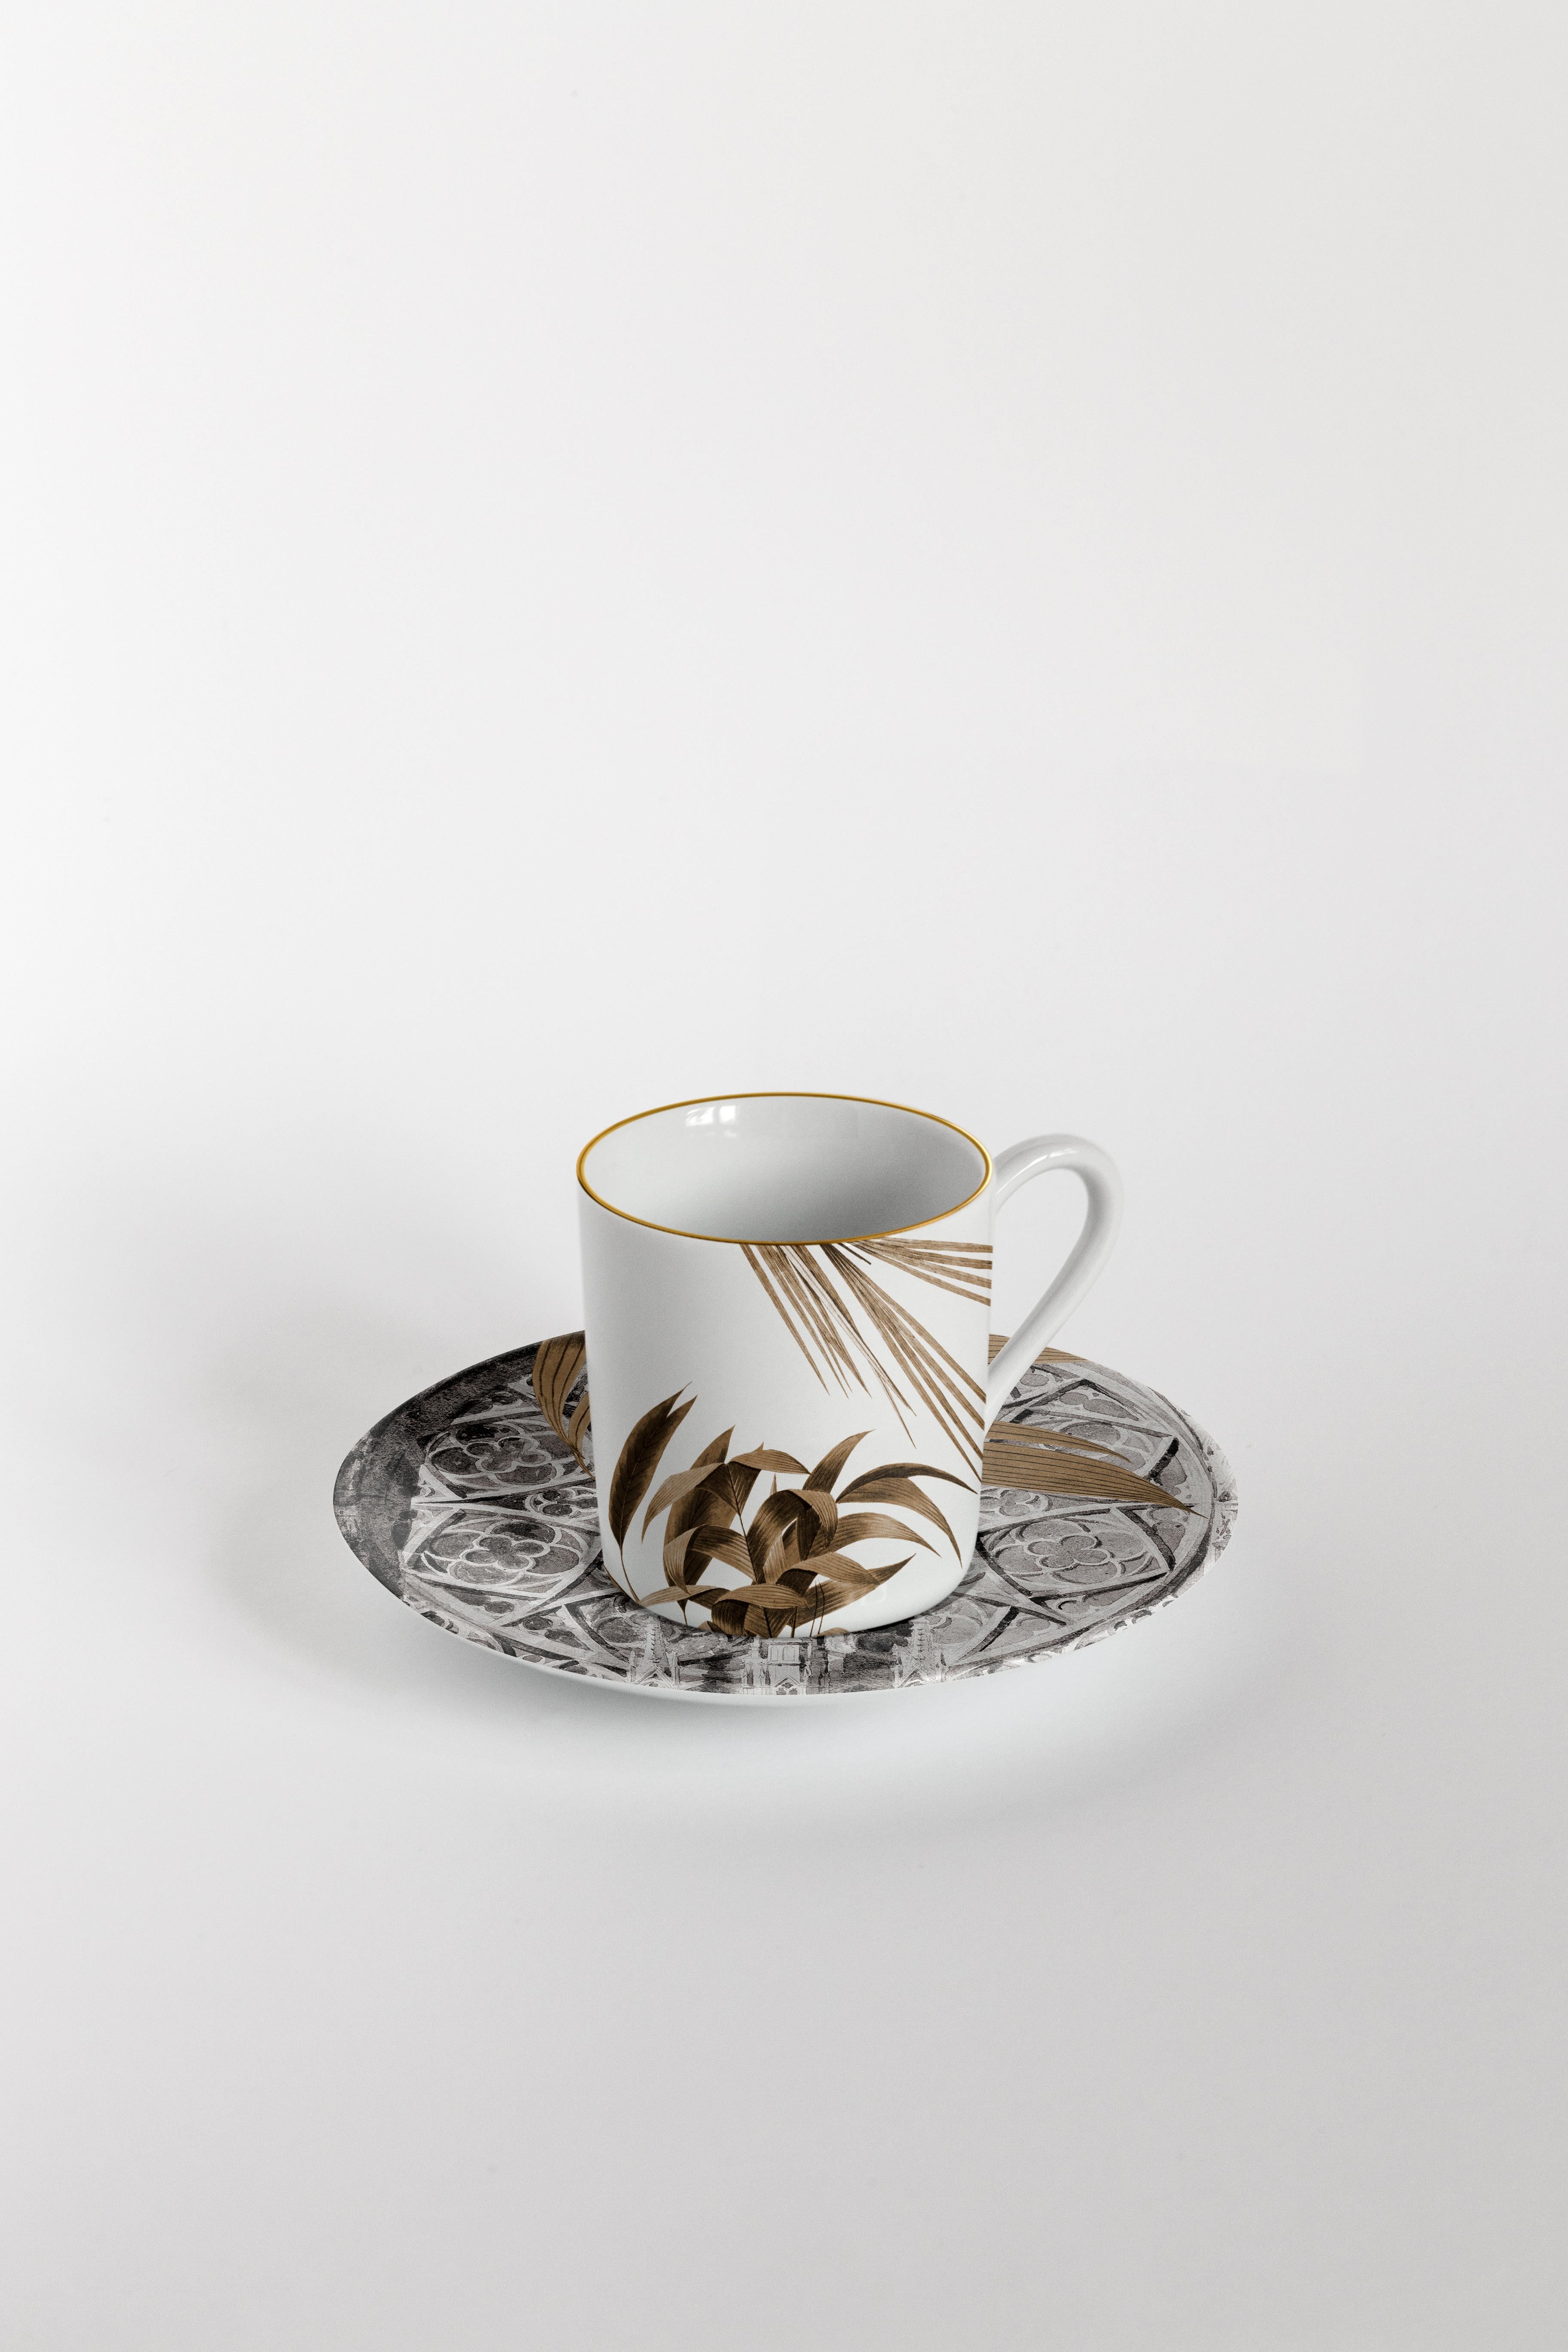 Italian Il Duomo Che Non C'è, Six Contemporary Decorated Coffee Cups with Plates For Sale